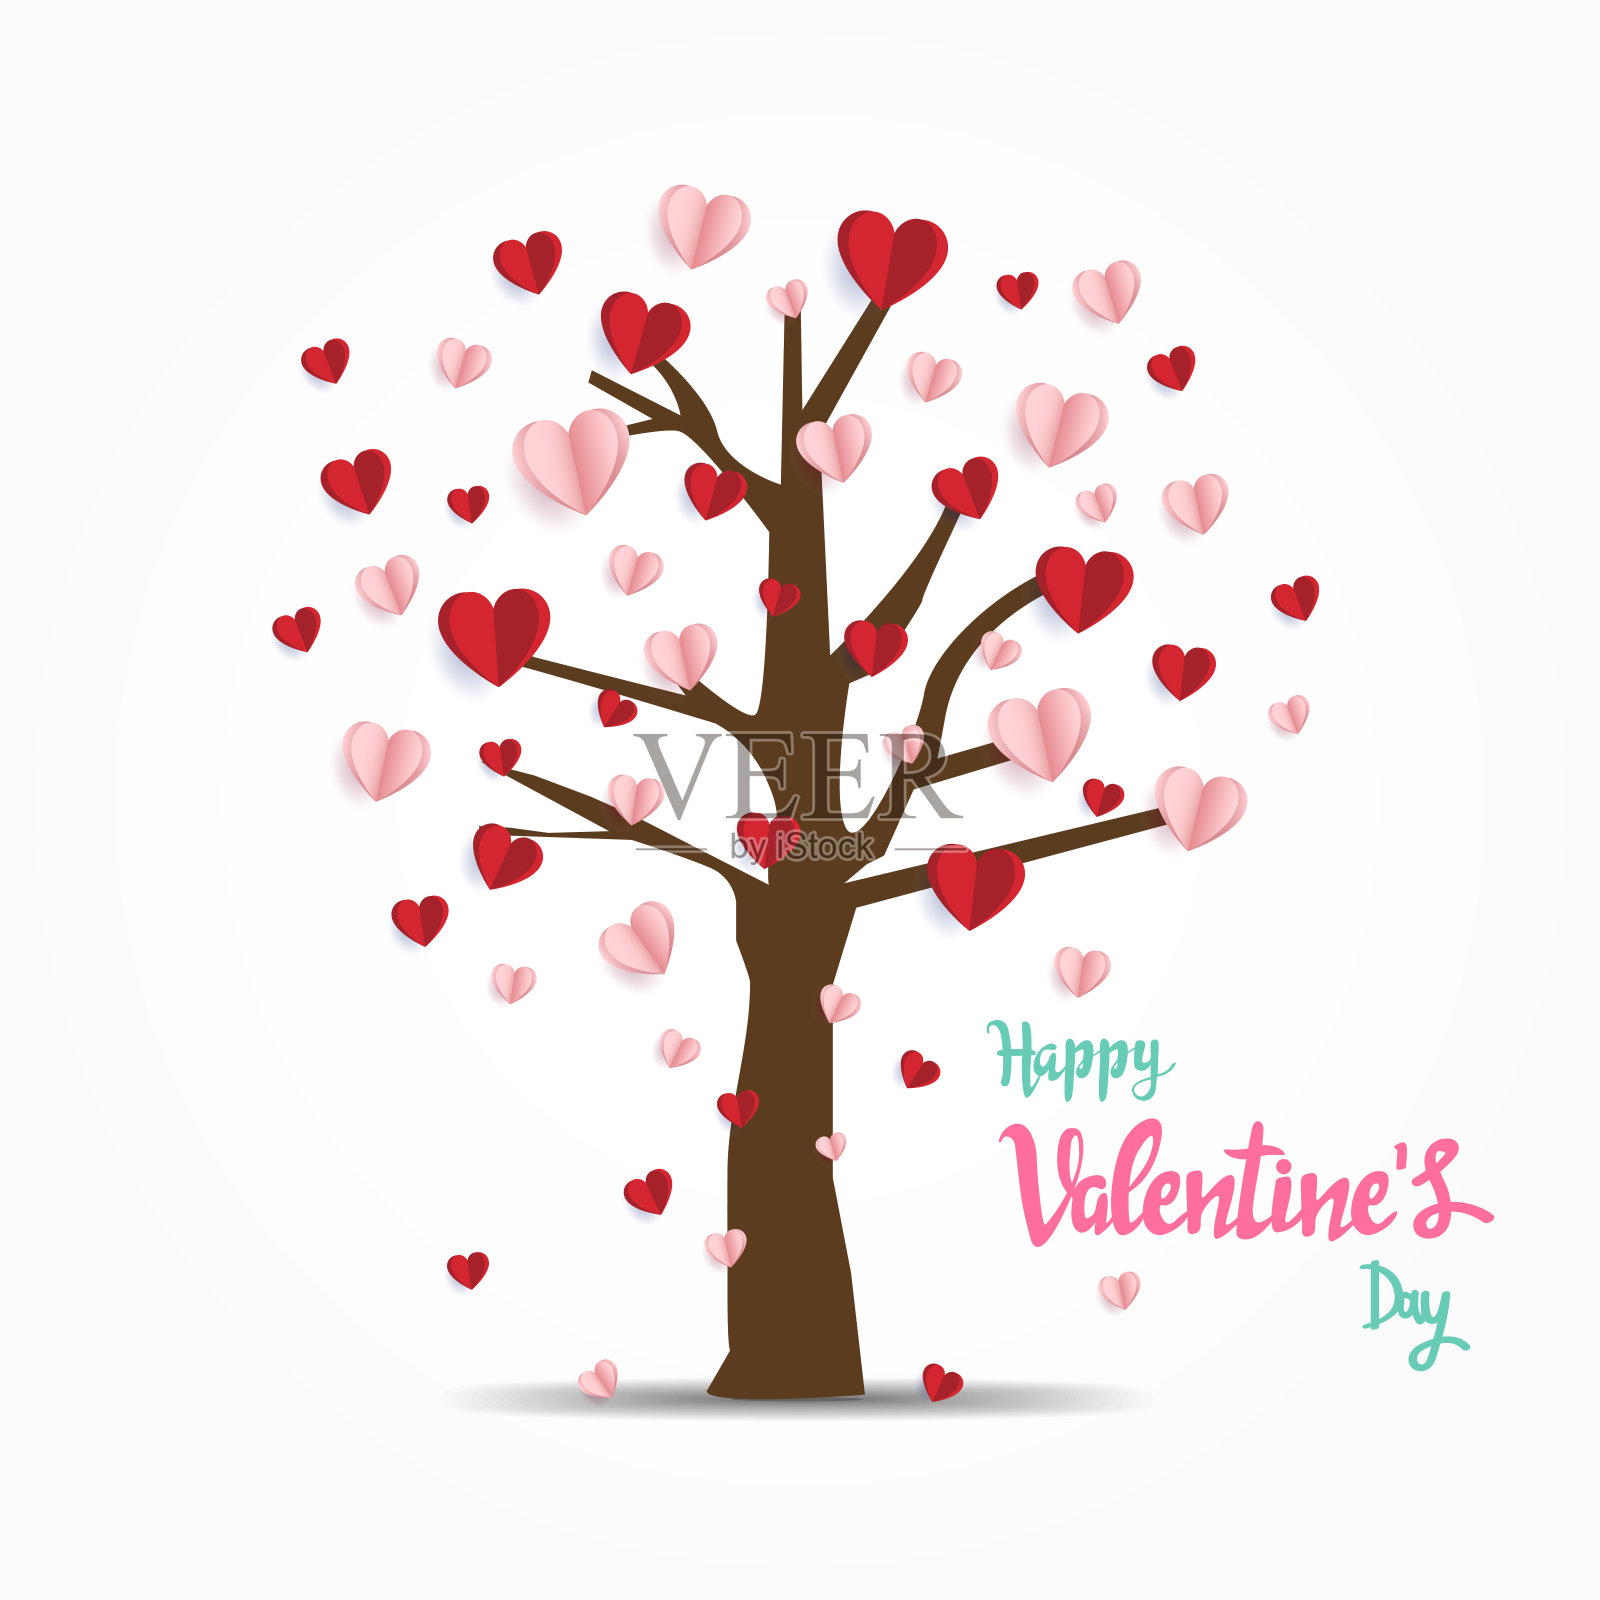 情人节快乐。有创意的红色和粉红色的爱气球在树上。最小的概念。矢量图插画图片素材